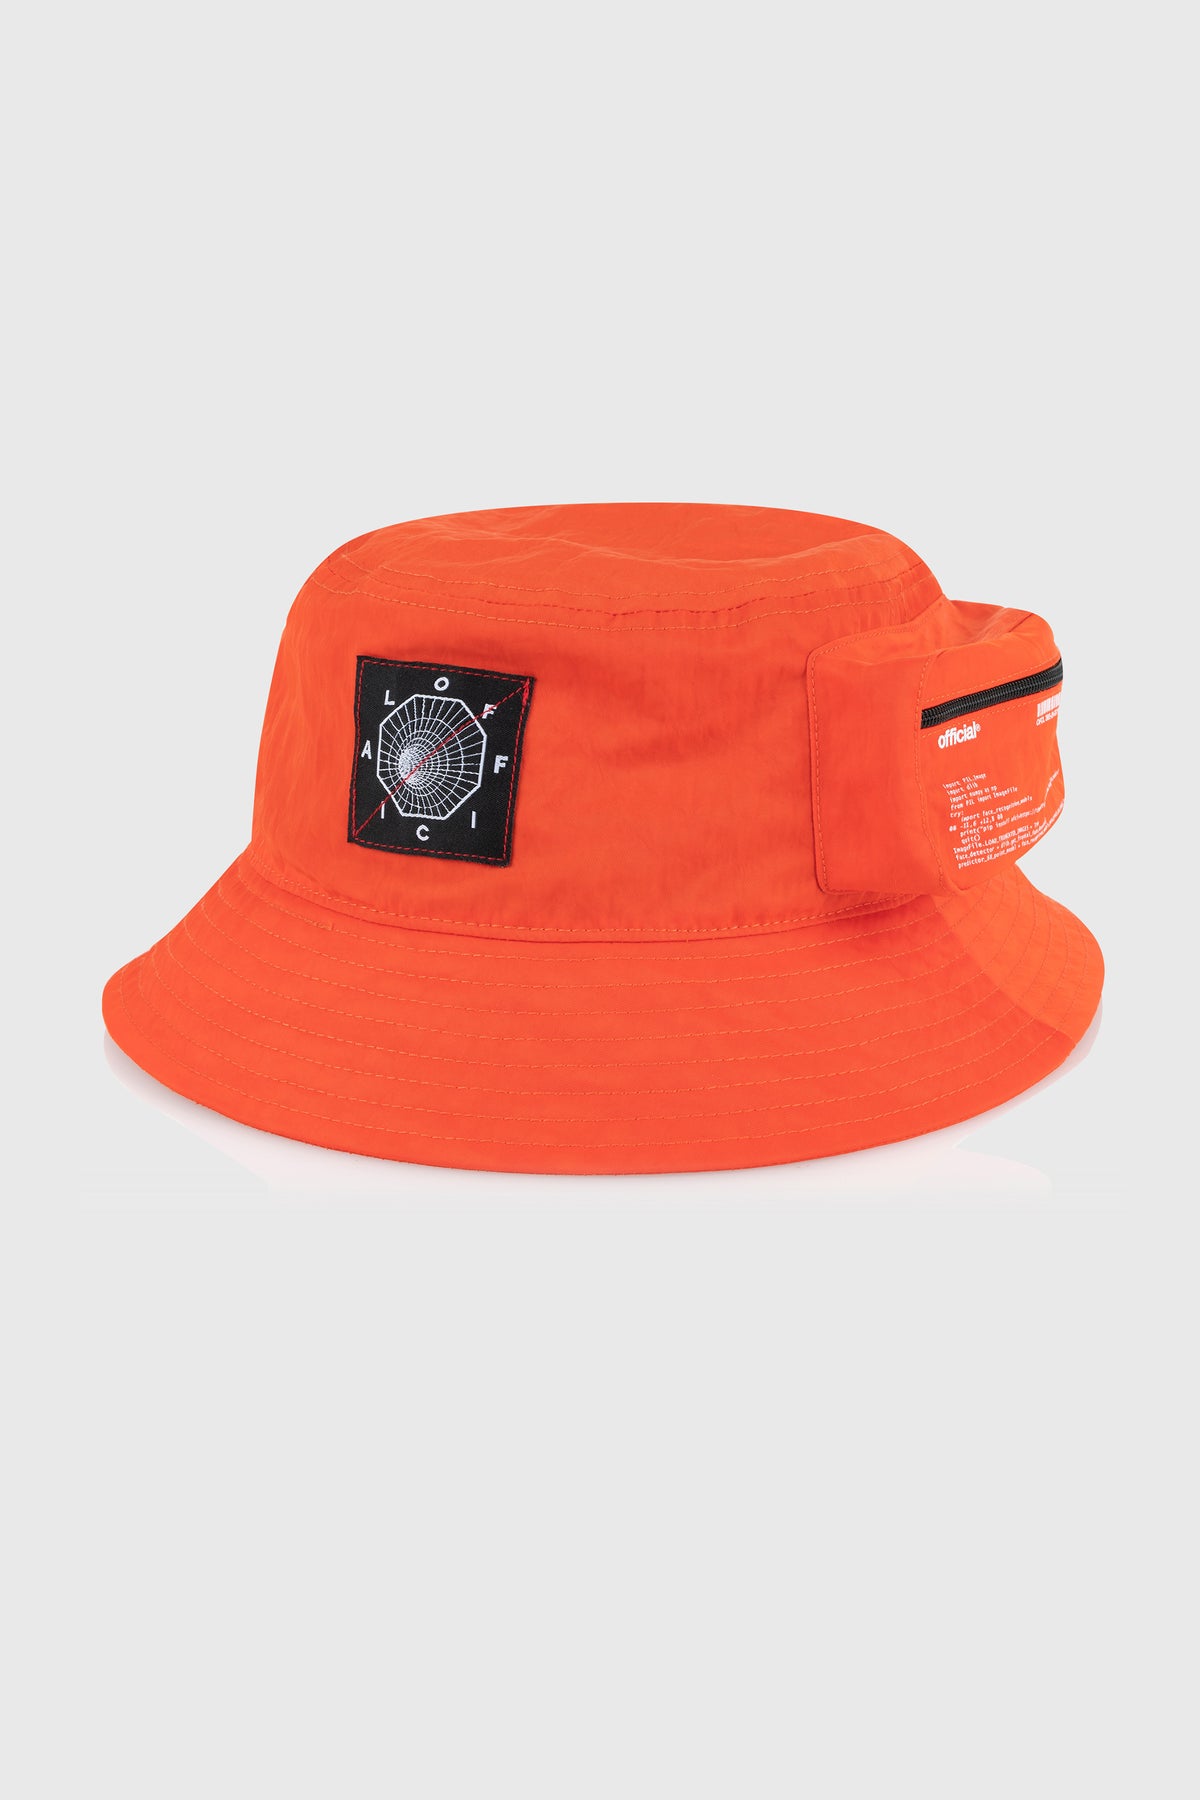 Bio-Tracker Cargo Bucket Hat (Orange) – The Official Brand